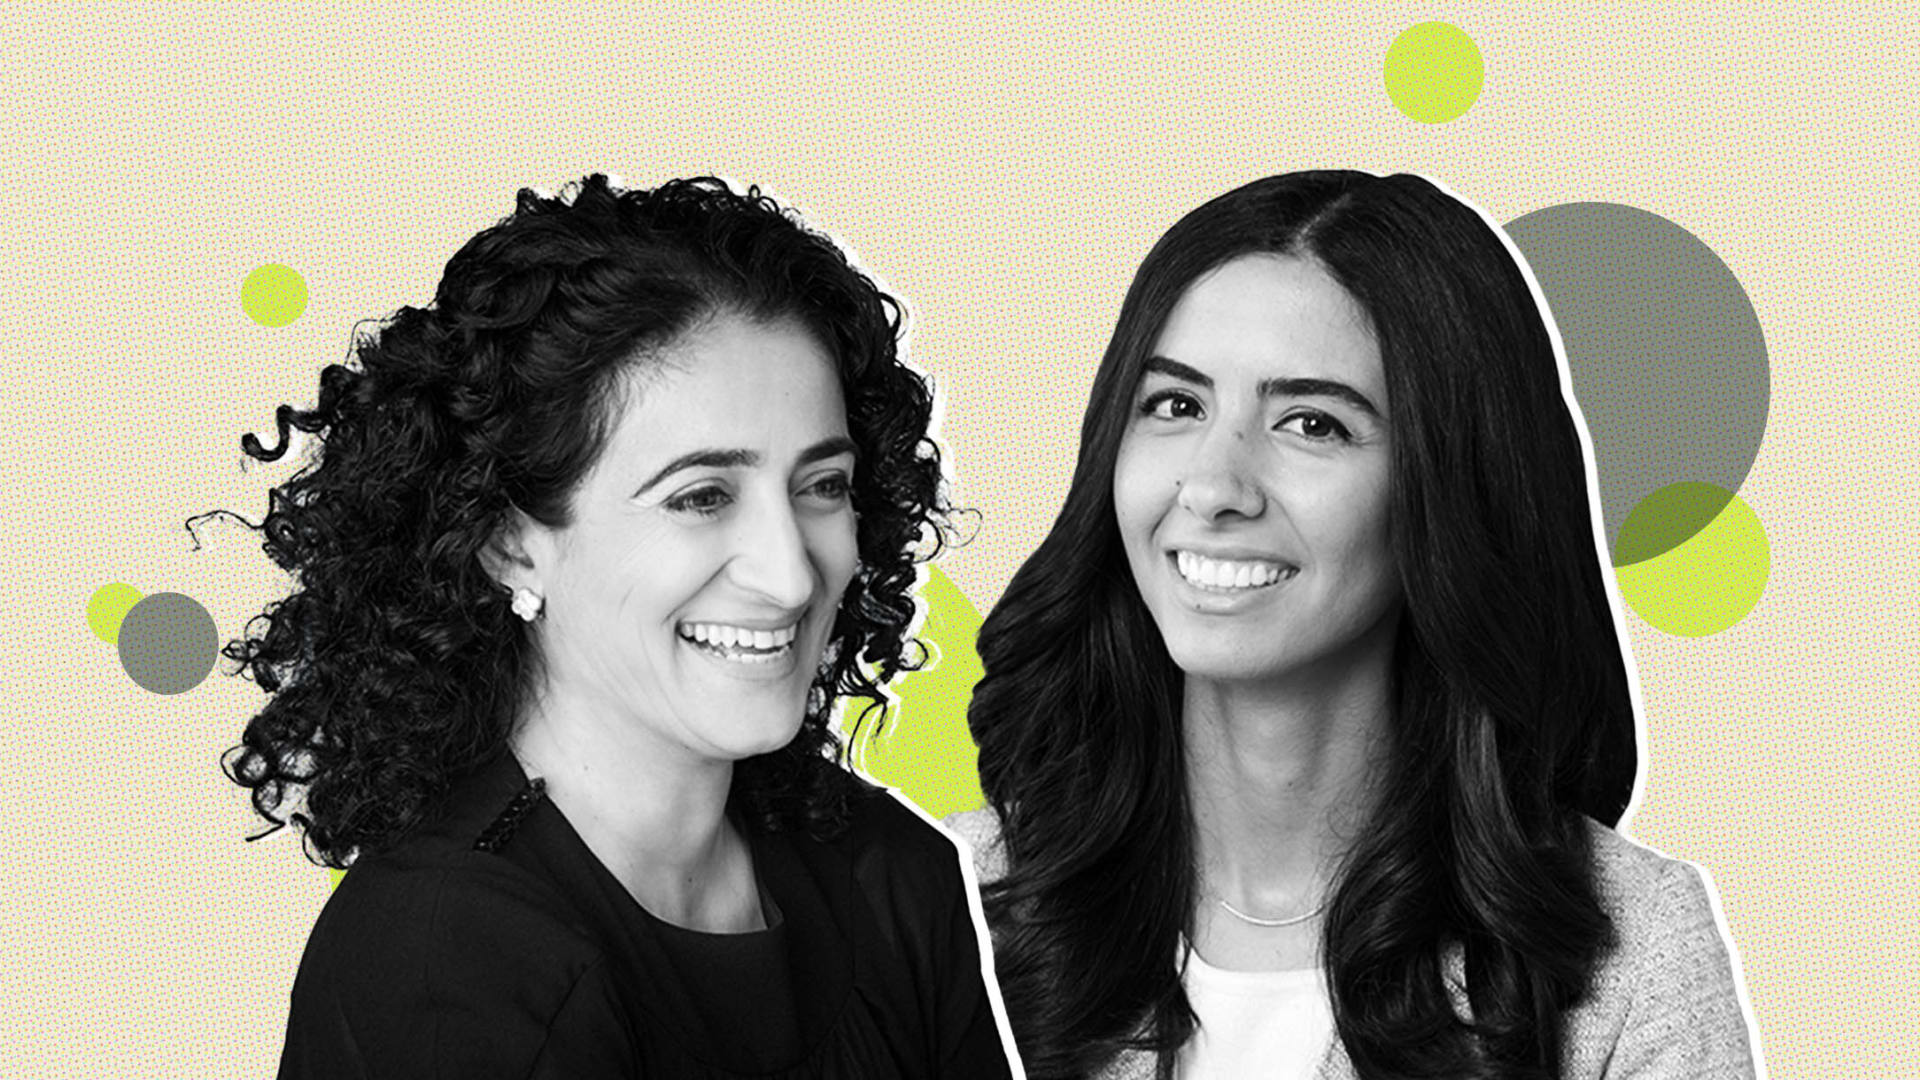 Maryam Banikarim, head of marketing at Nextdoor, and Roxana Shirkhoda, head of social impact at Zoom.